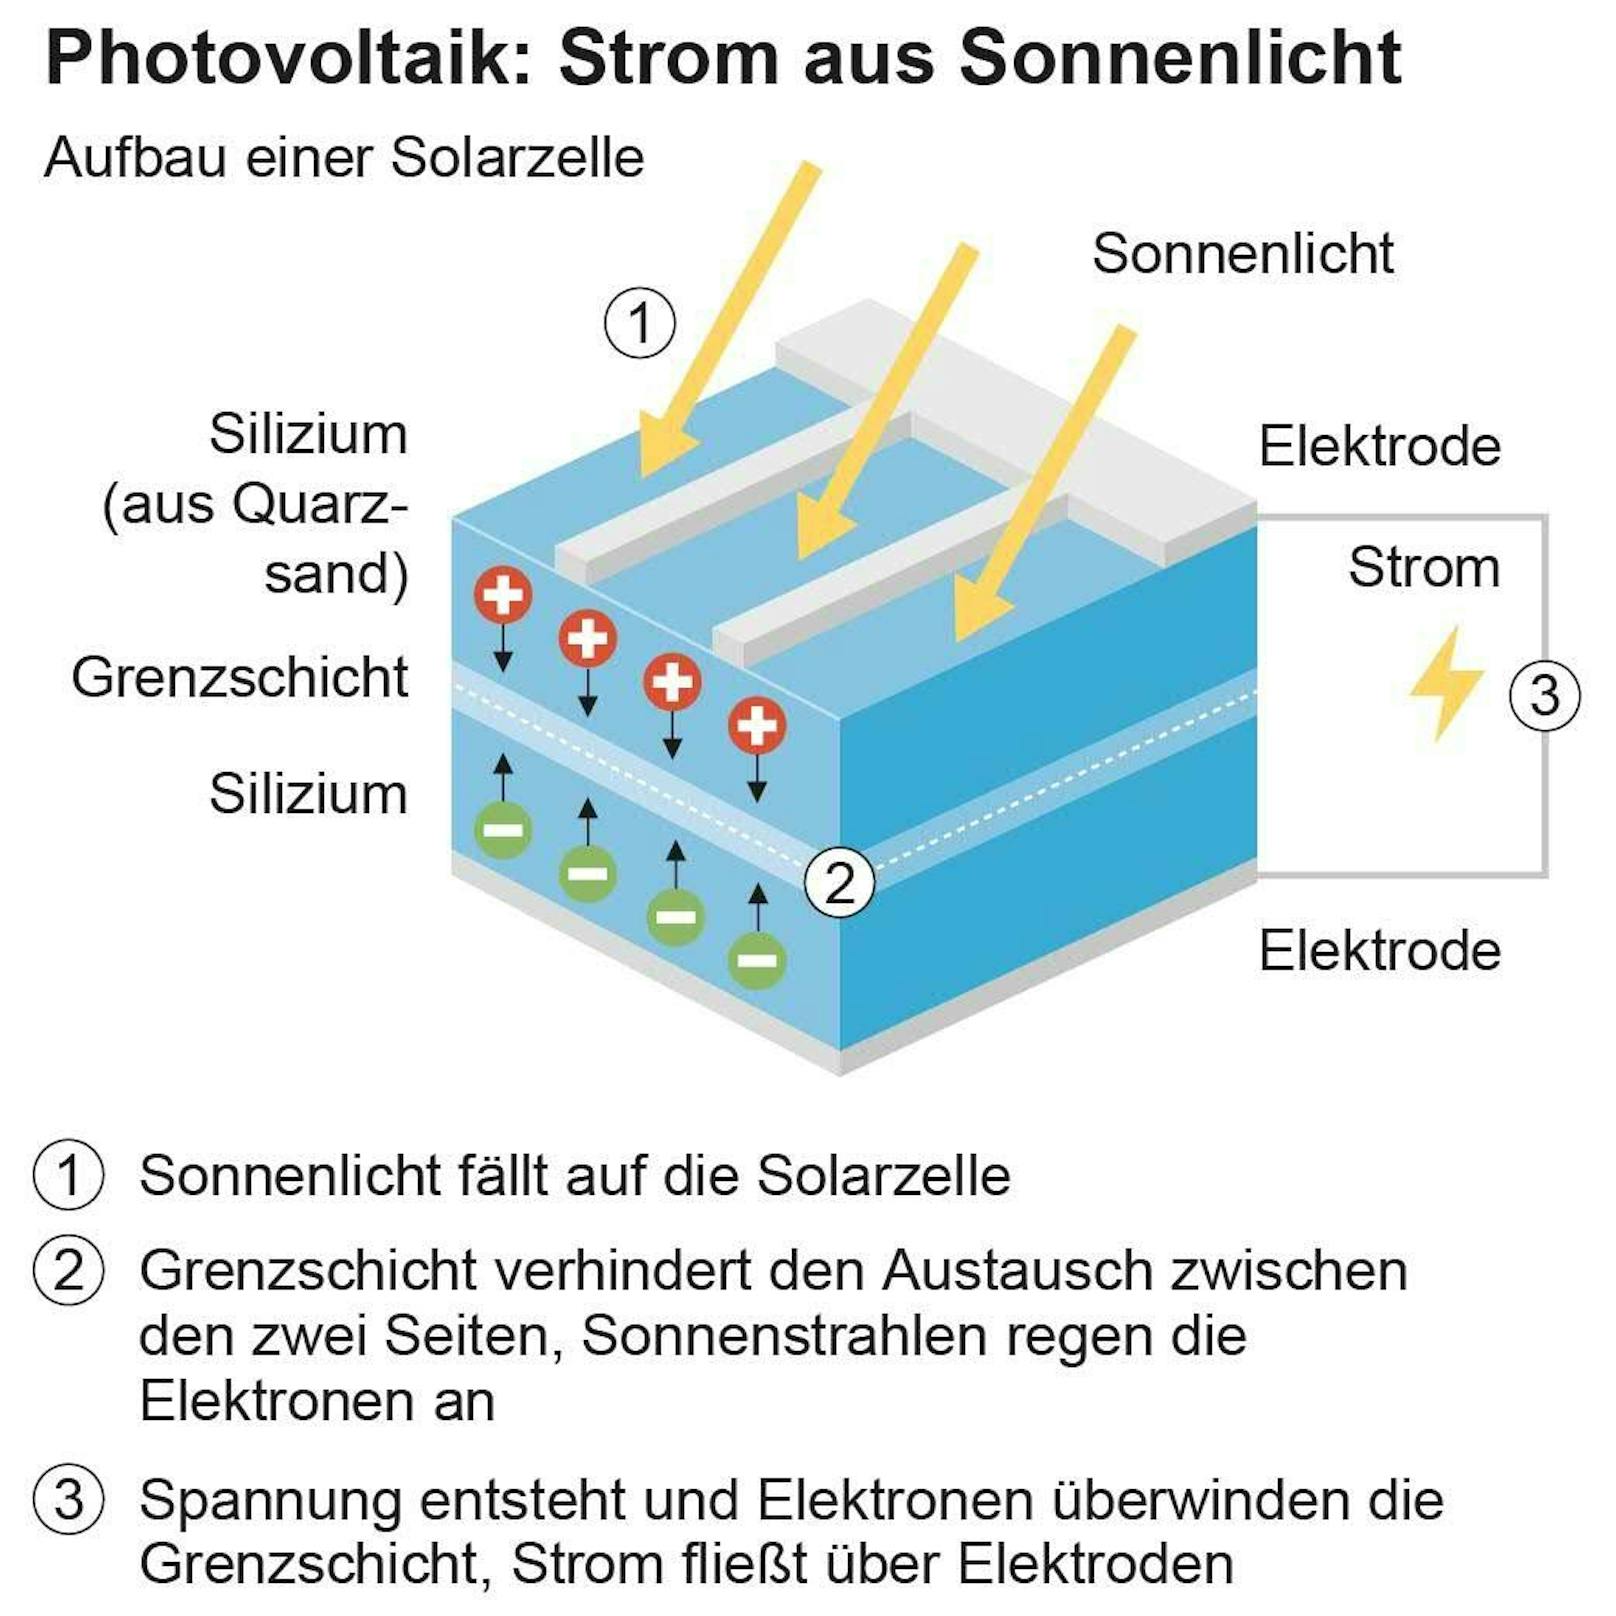 Photovoltaik boomt: So funktioniert Energiegewinnung durch Solarzellen.